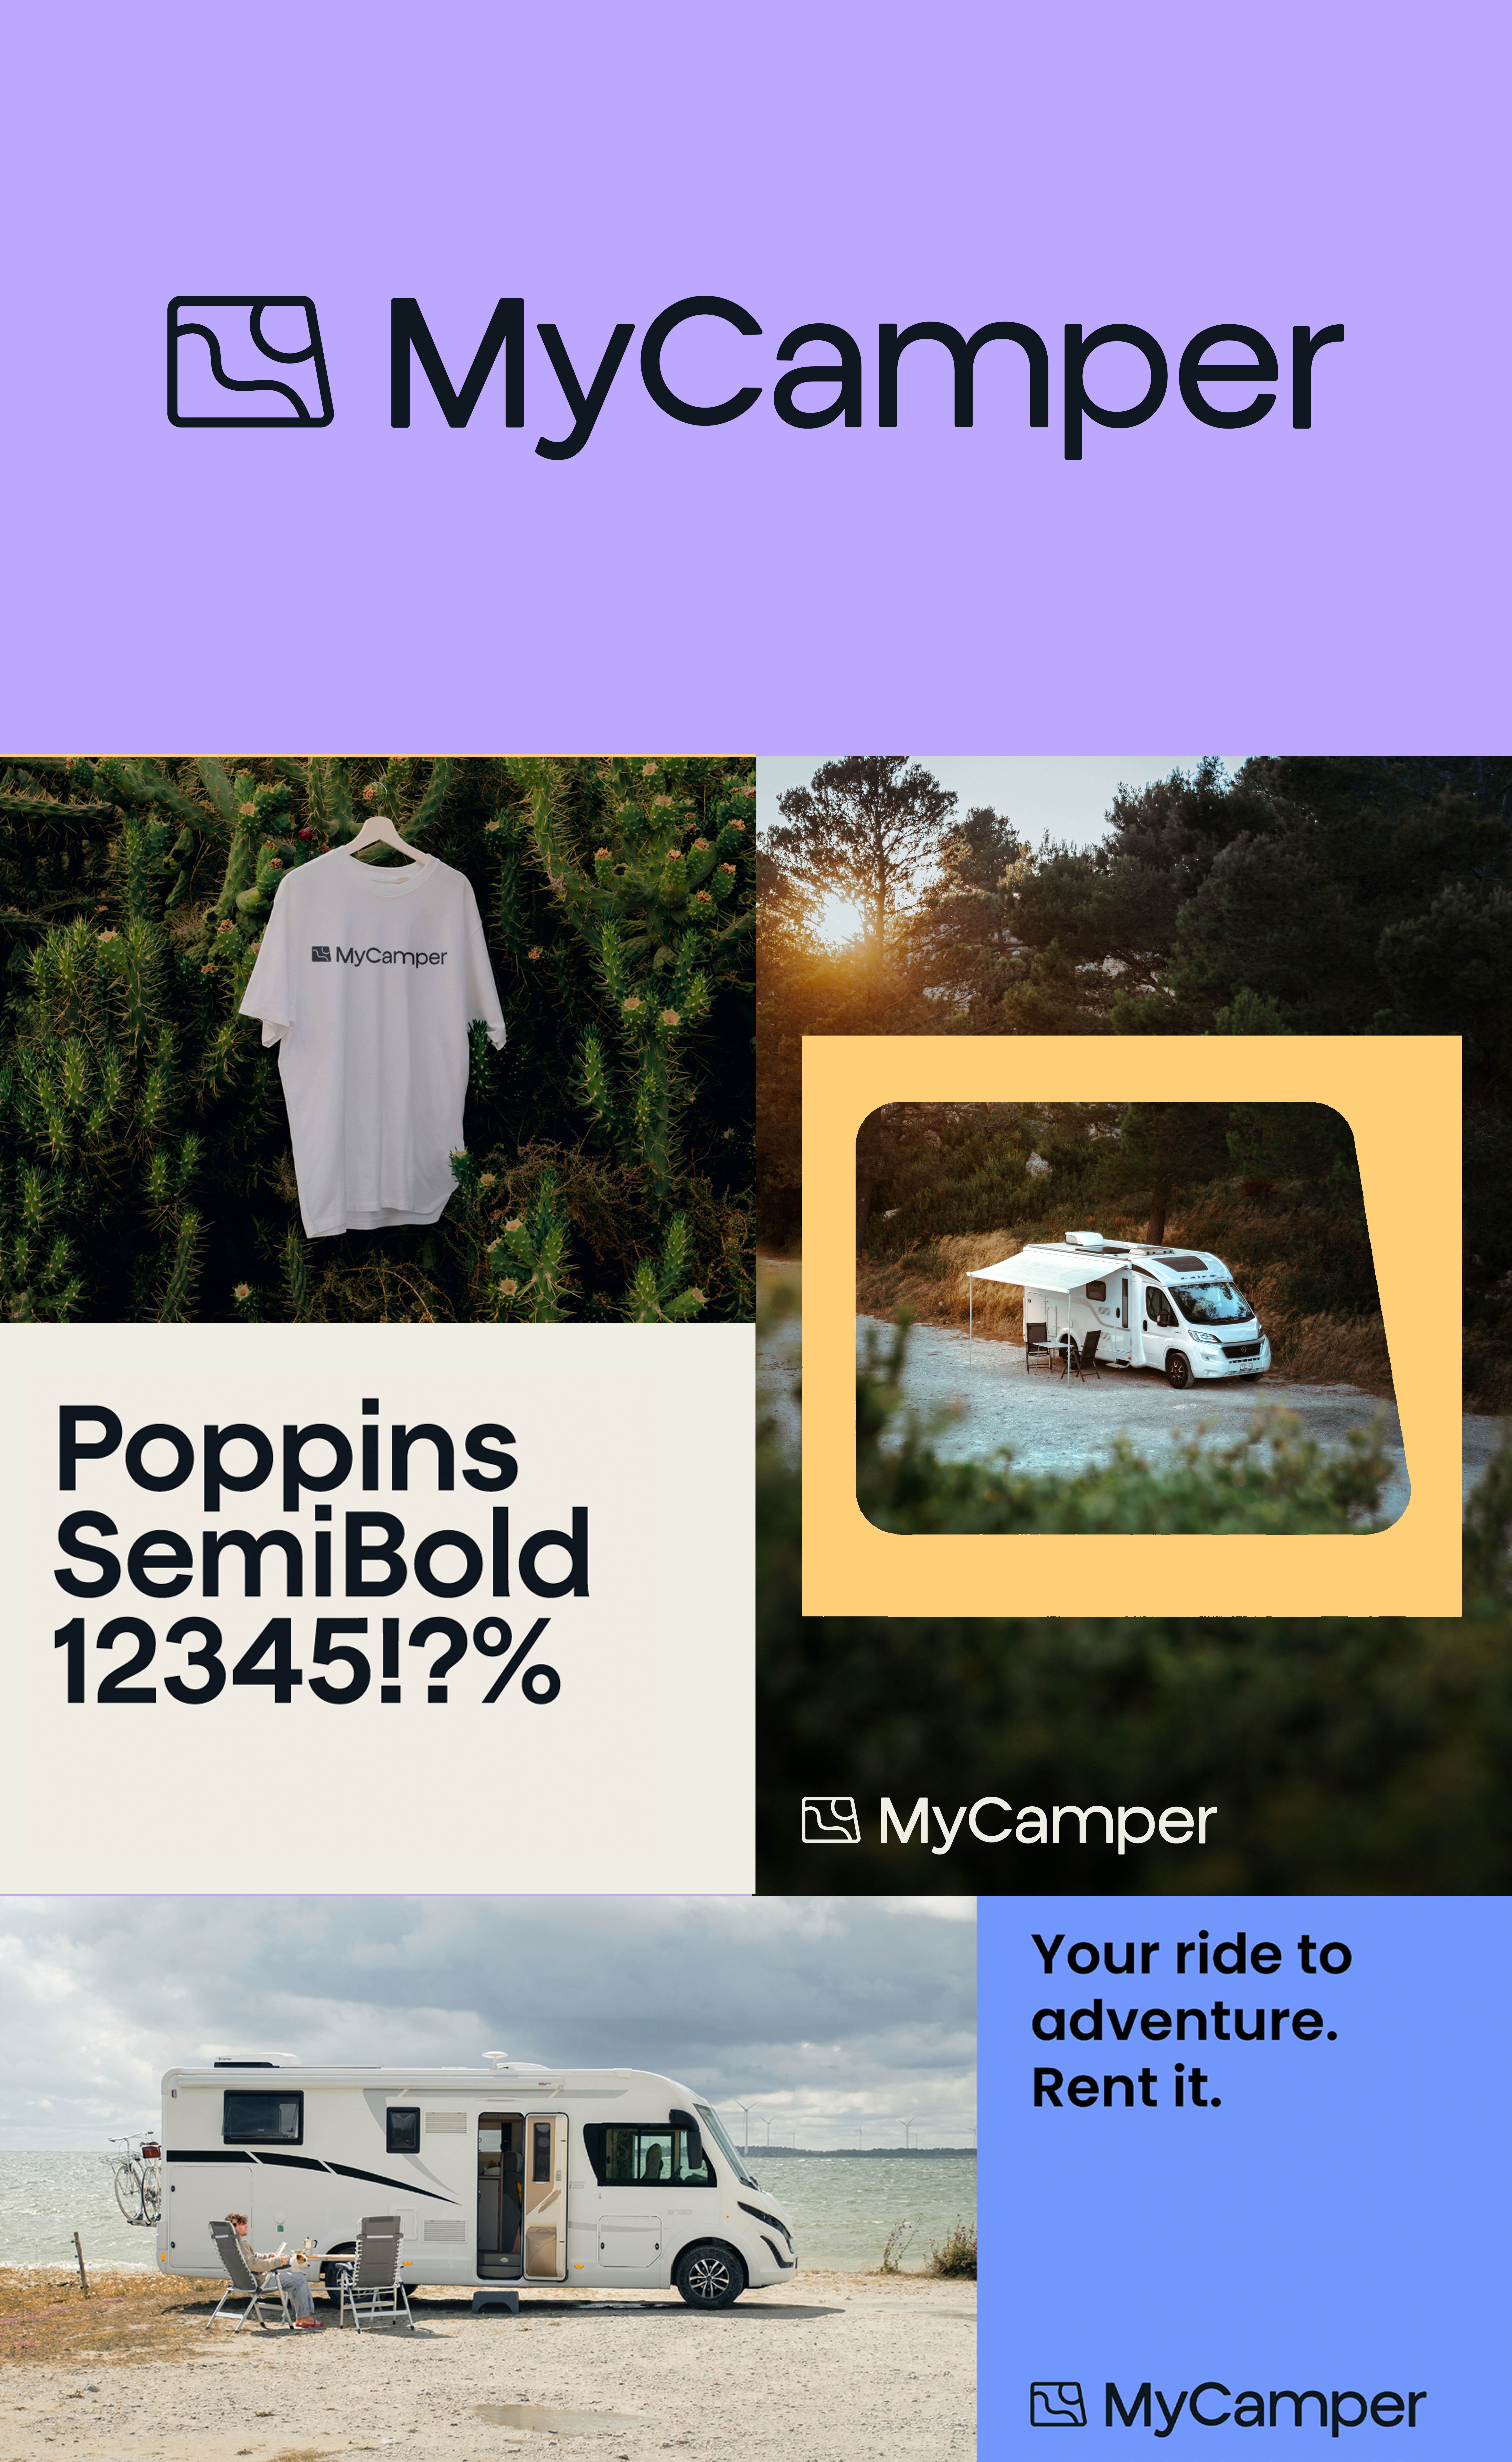 MyCamperin uusi brändi-identiteetti on sympaattinen, lämmin ja luotettava.